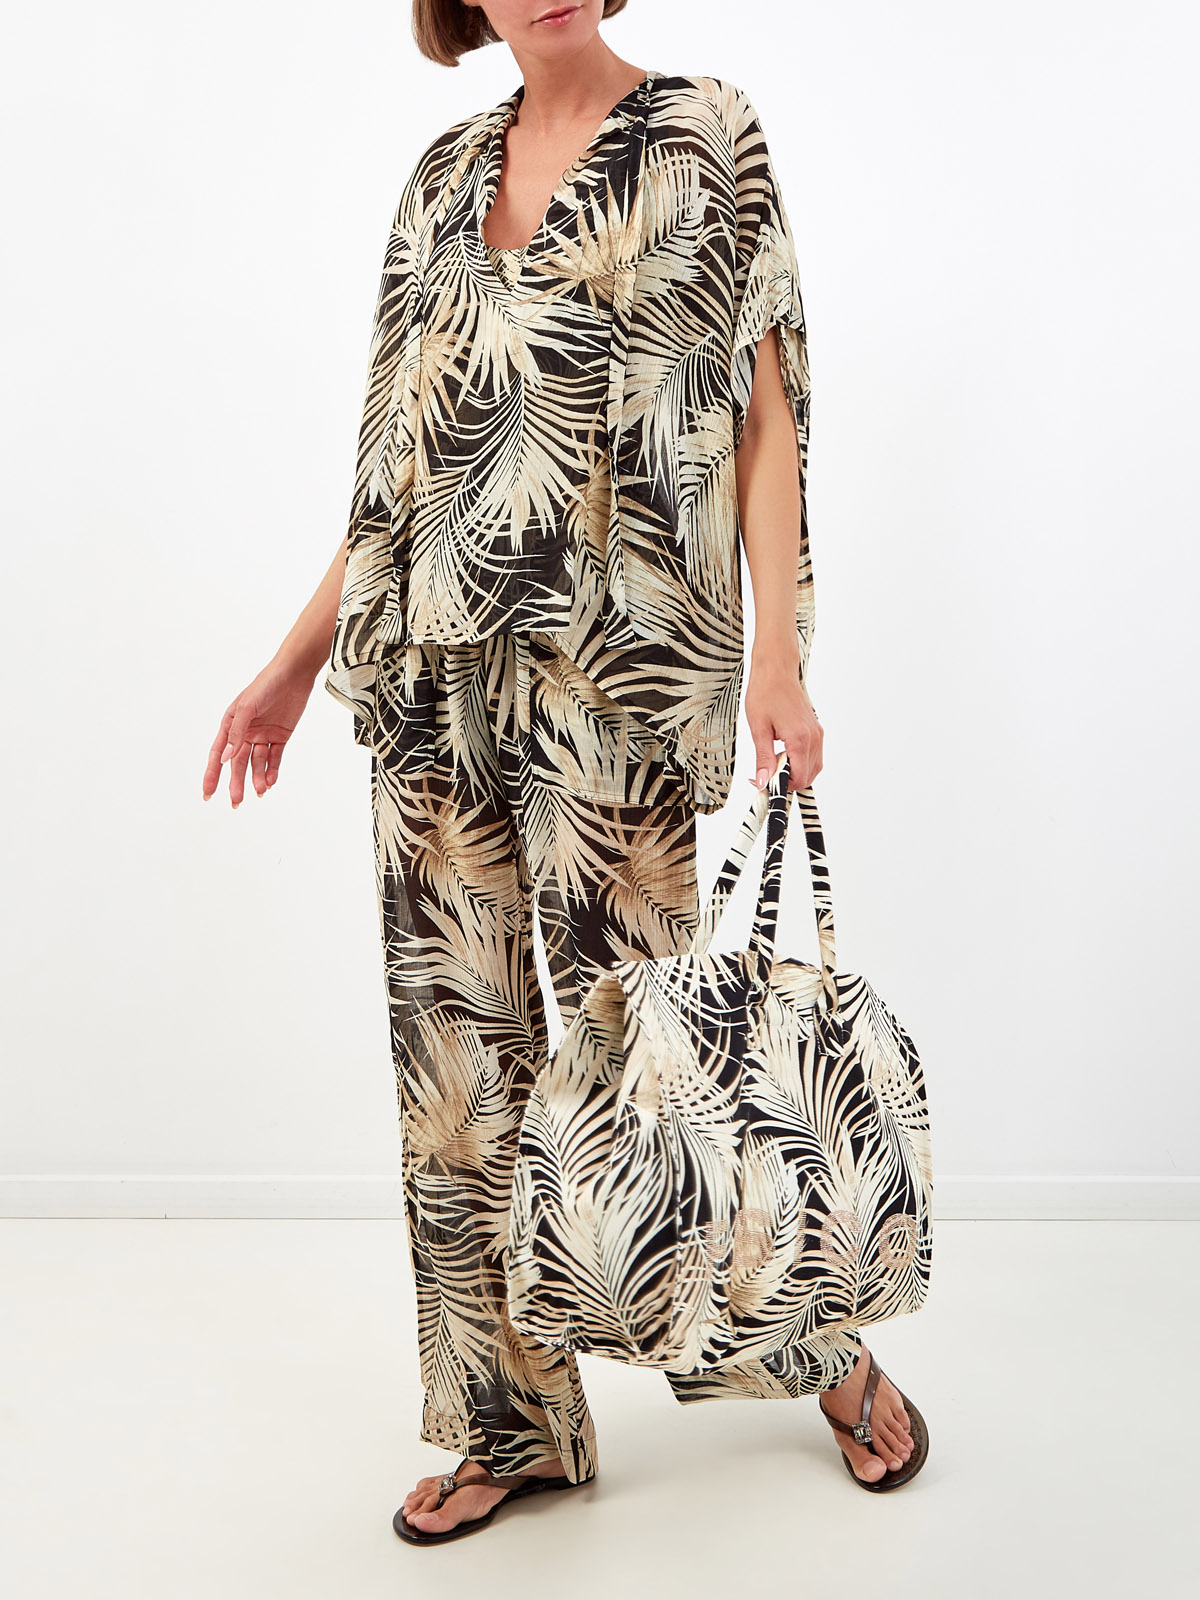 Легкая блуза из вискозы и шелка с тропическим принтом FISICO, цвет бежевый, размер M;XL;S - фото 2